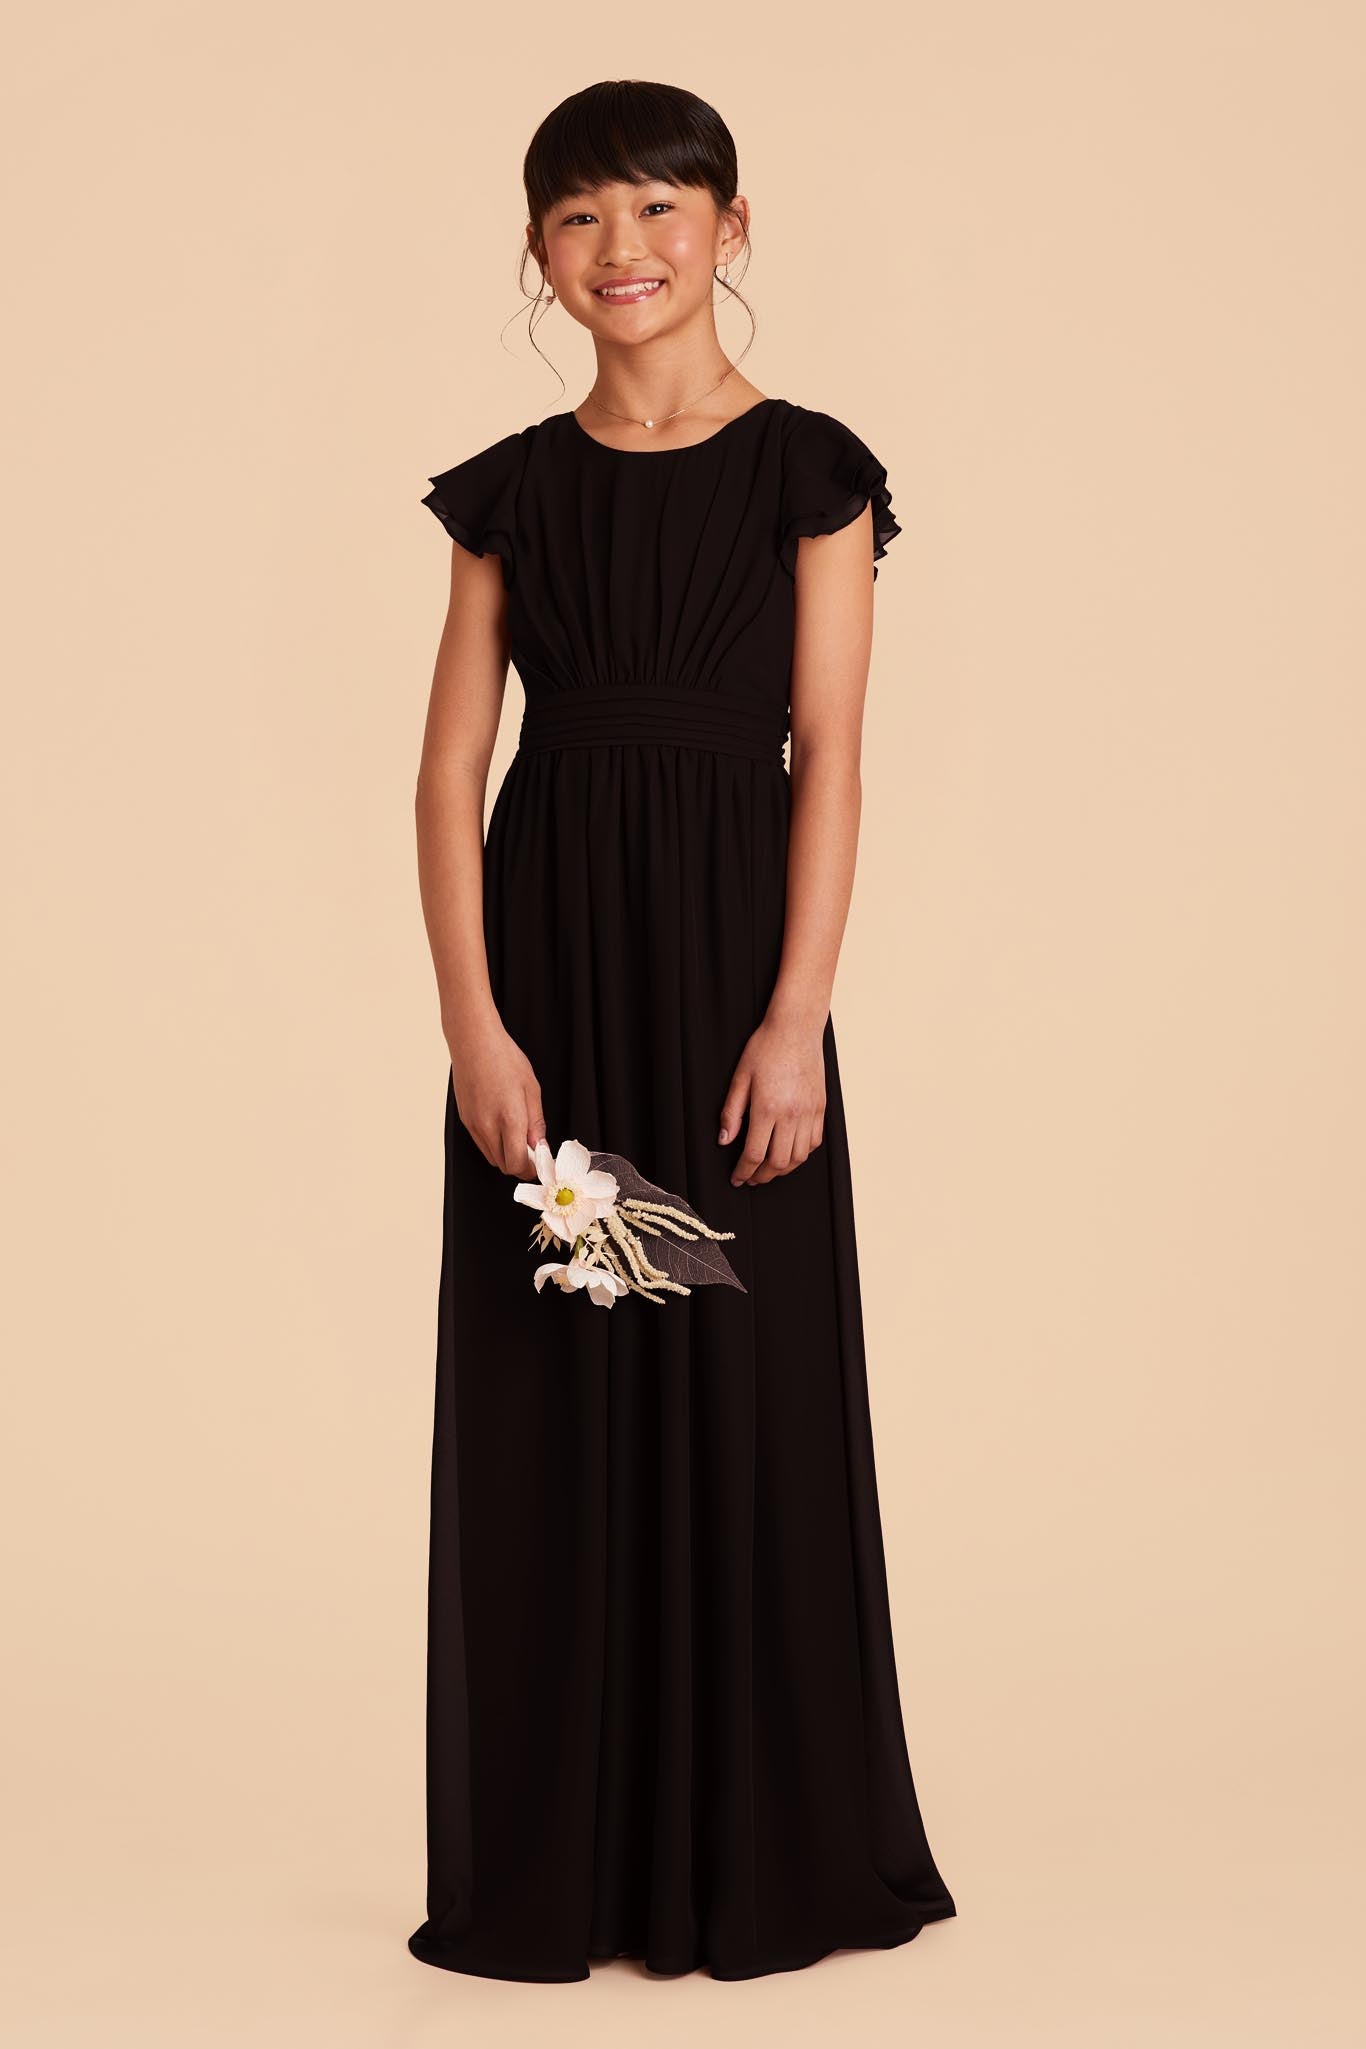 Black Celine Junior Dress by Birdy Grey